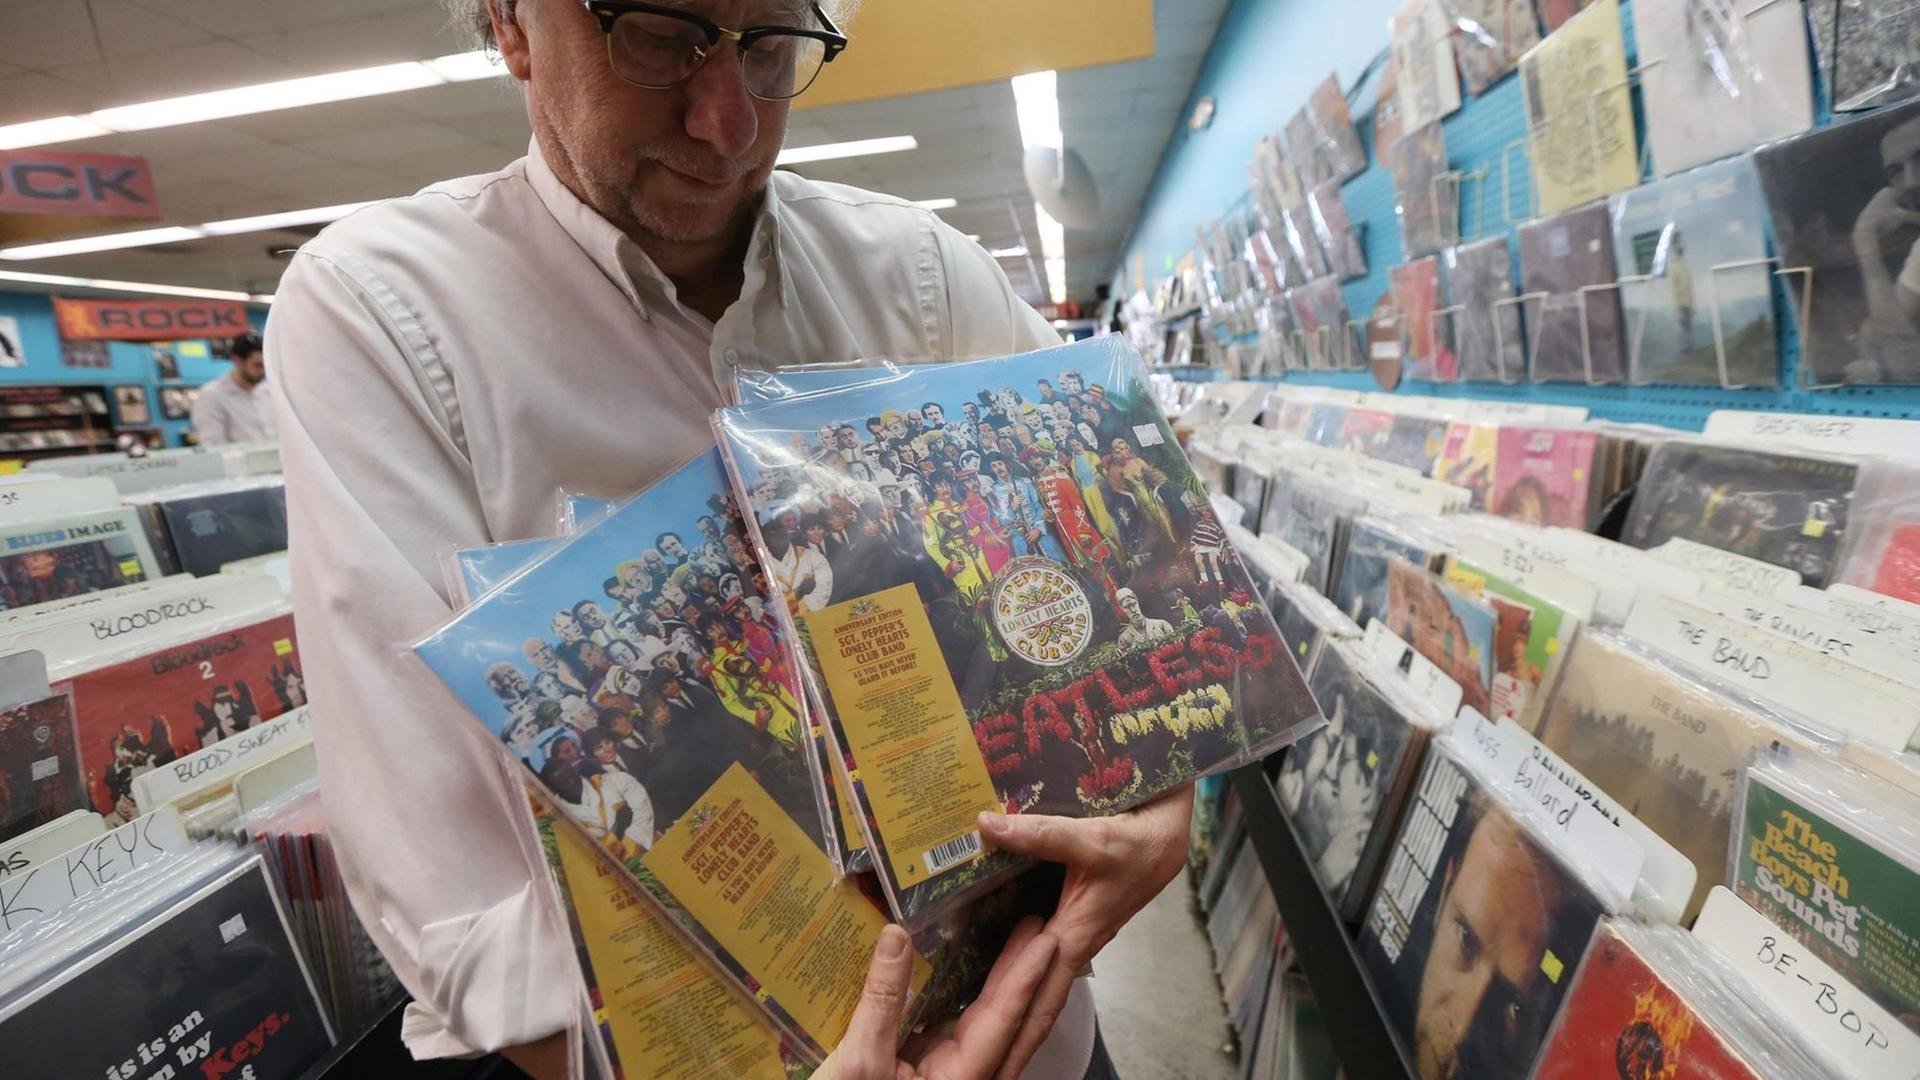 Ein Mitarbeiter eines Plattenladens in University City, Missouri mit der 50. Jubiläumsausgabe von "Sgt. Pepper's" von den Beatles.